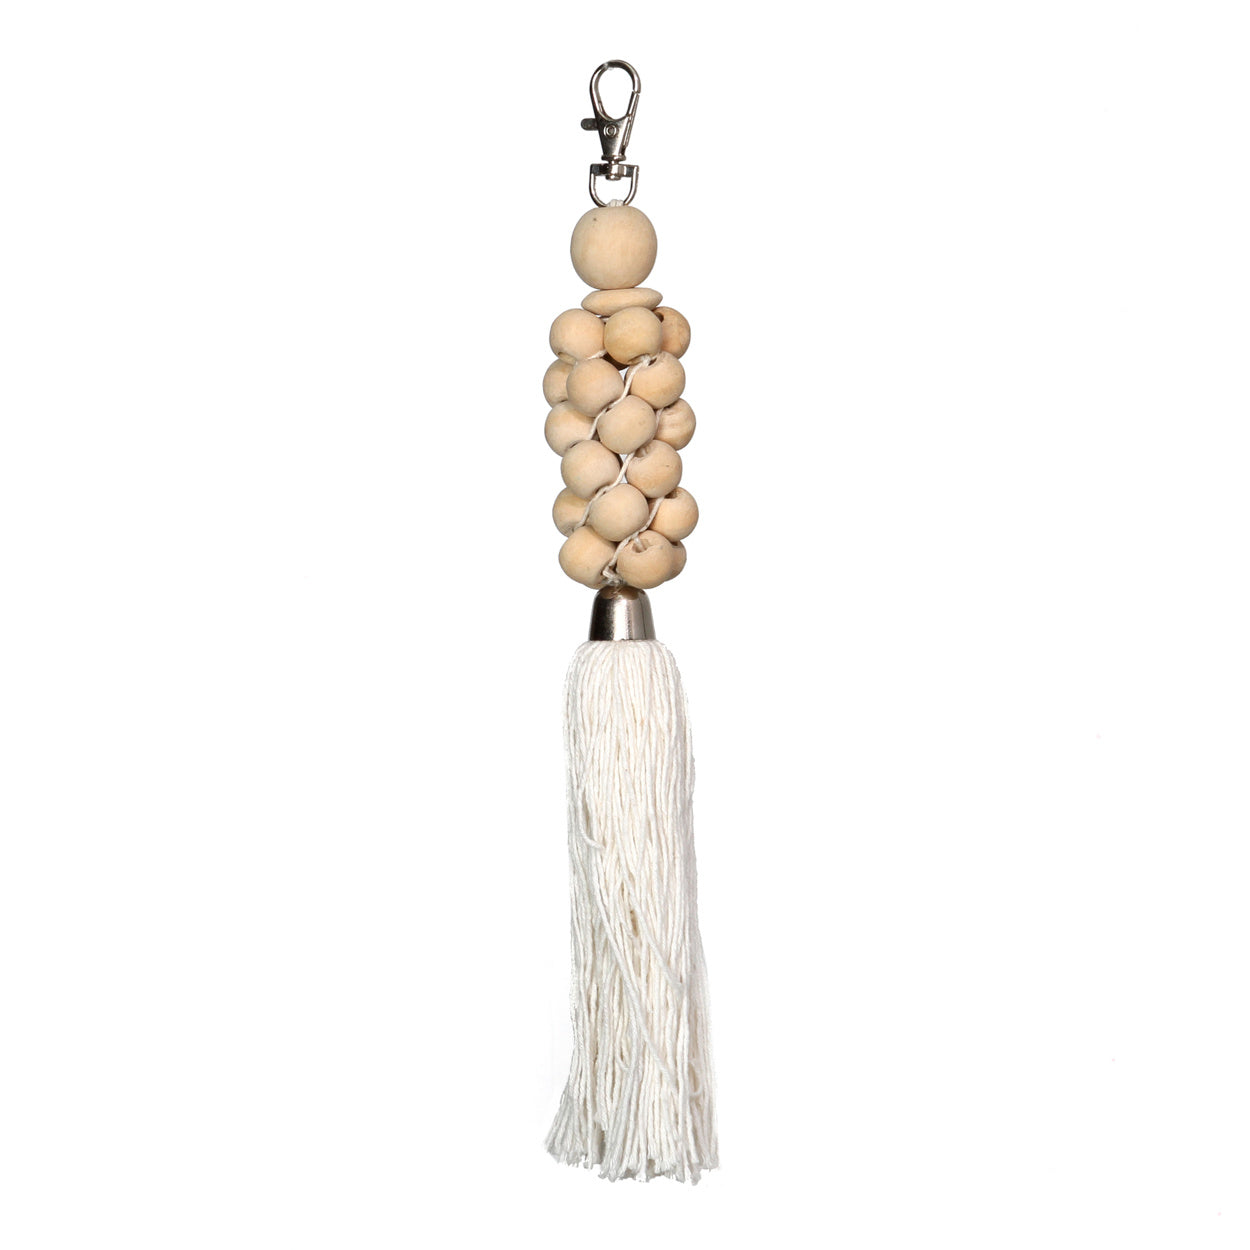 De Wooden Beads Sleutelhanger - Naturel Wit Bazar Bizar